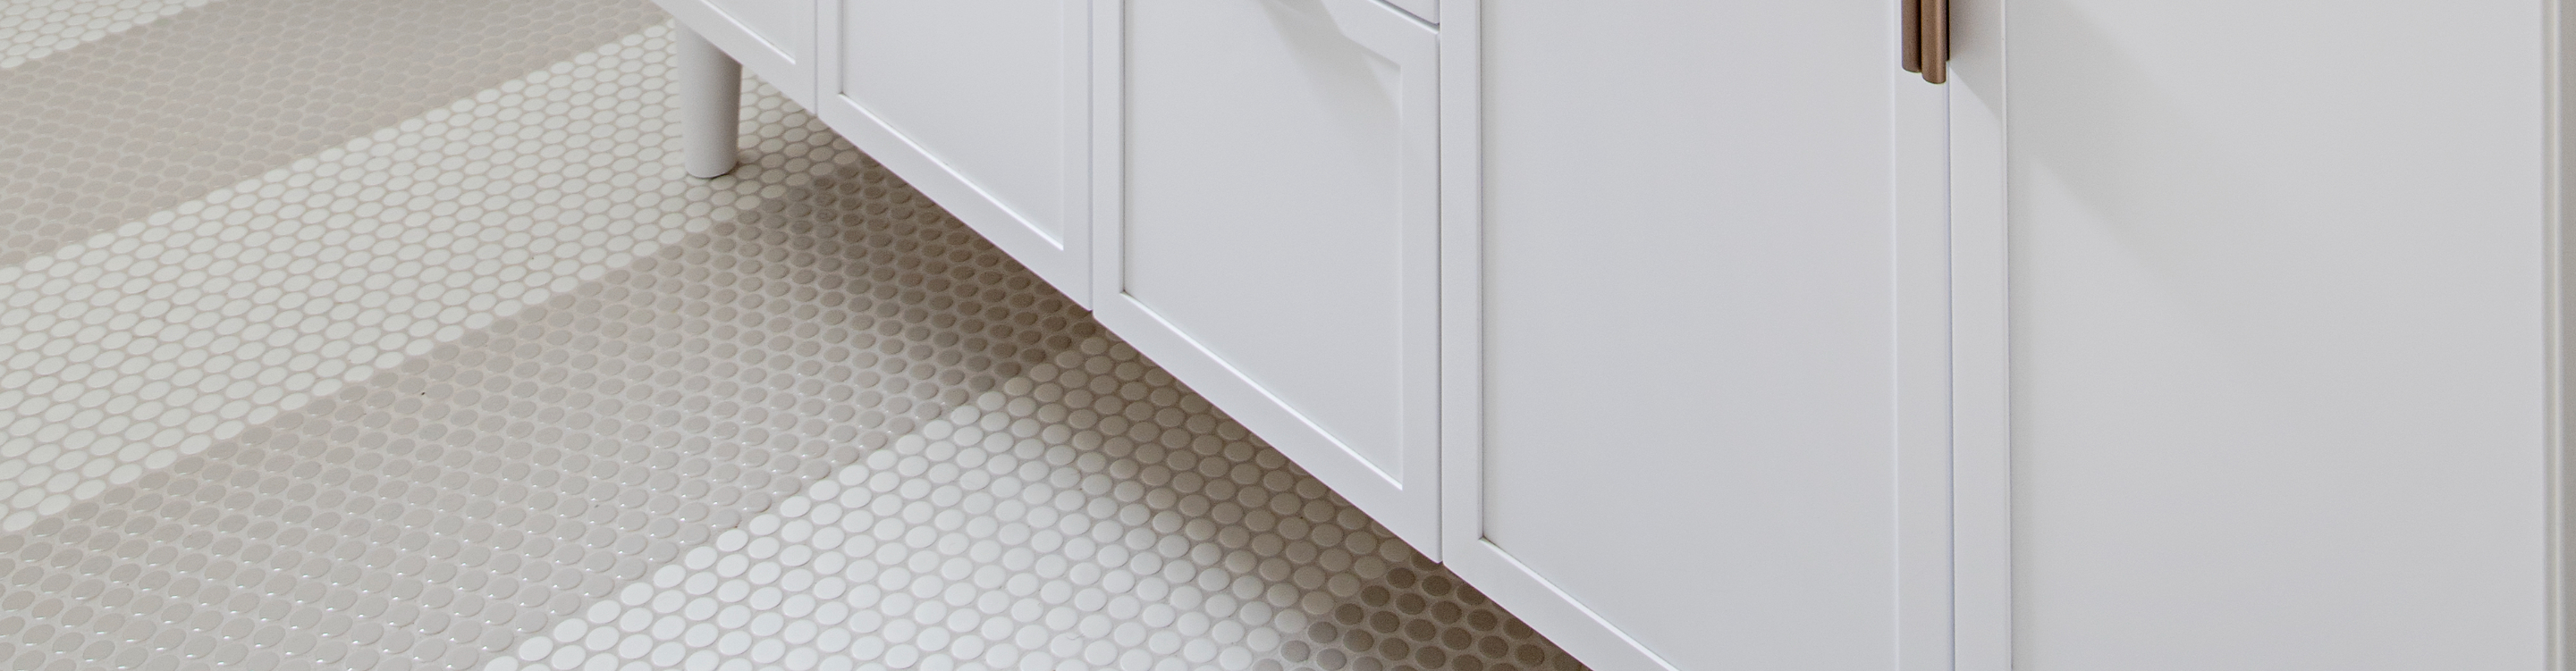 White Tile Flooring in Bathroom